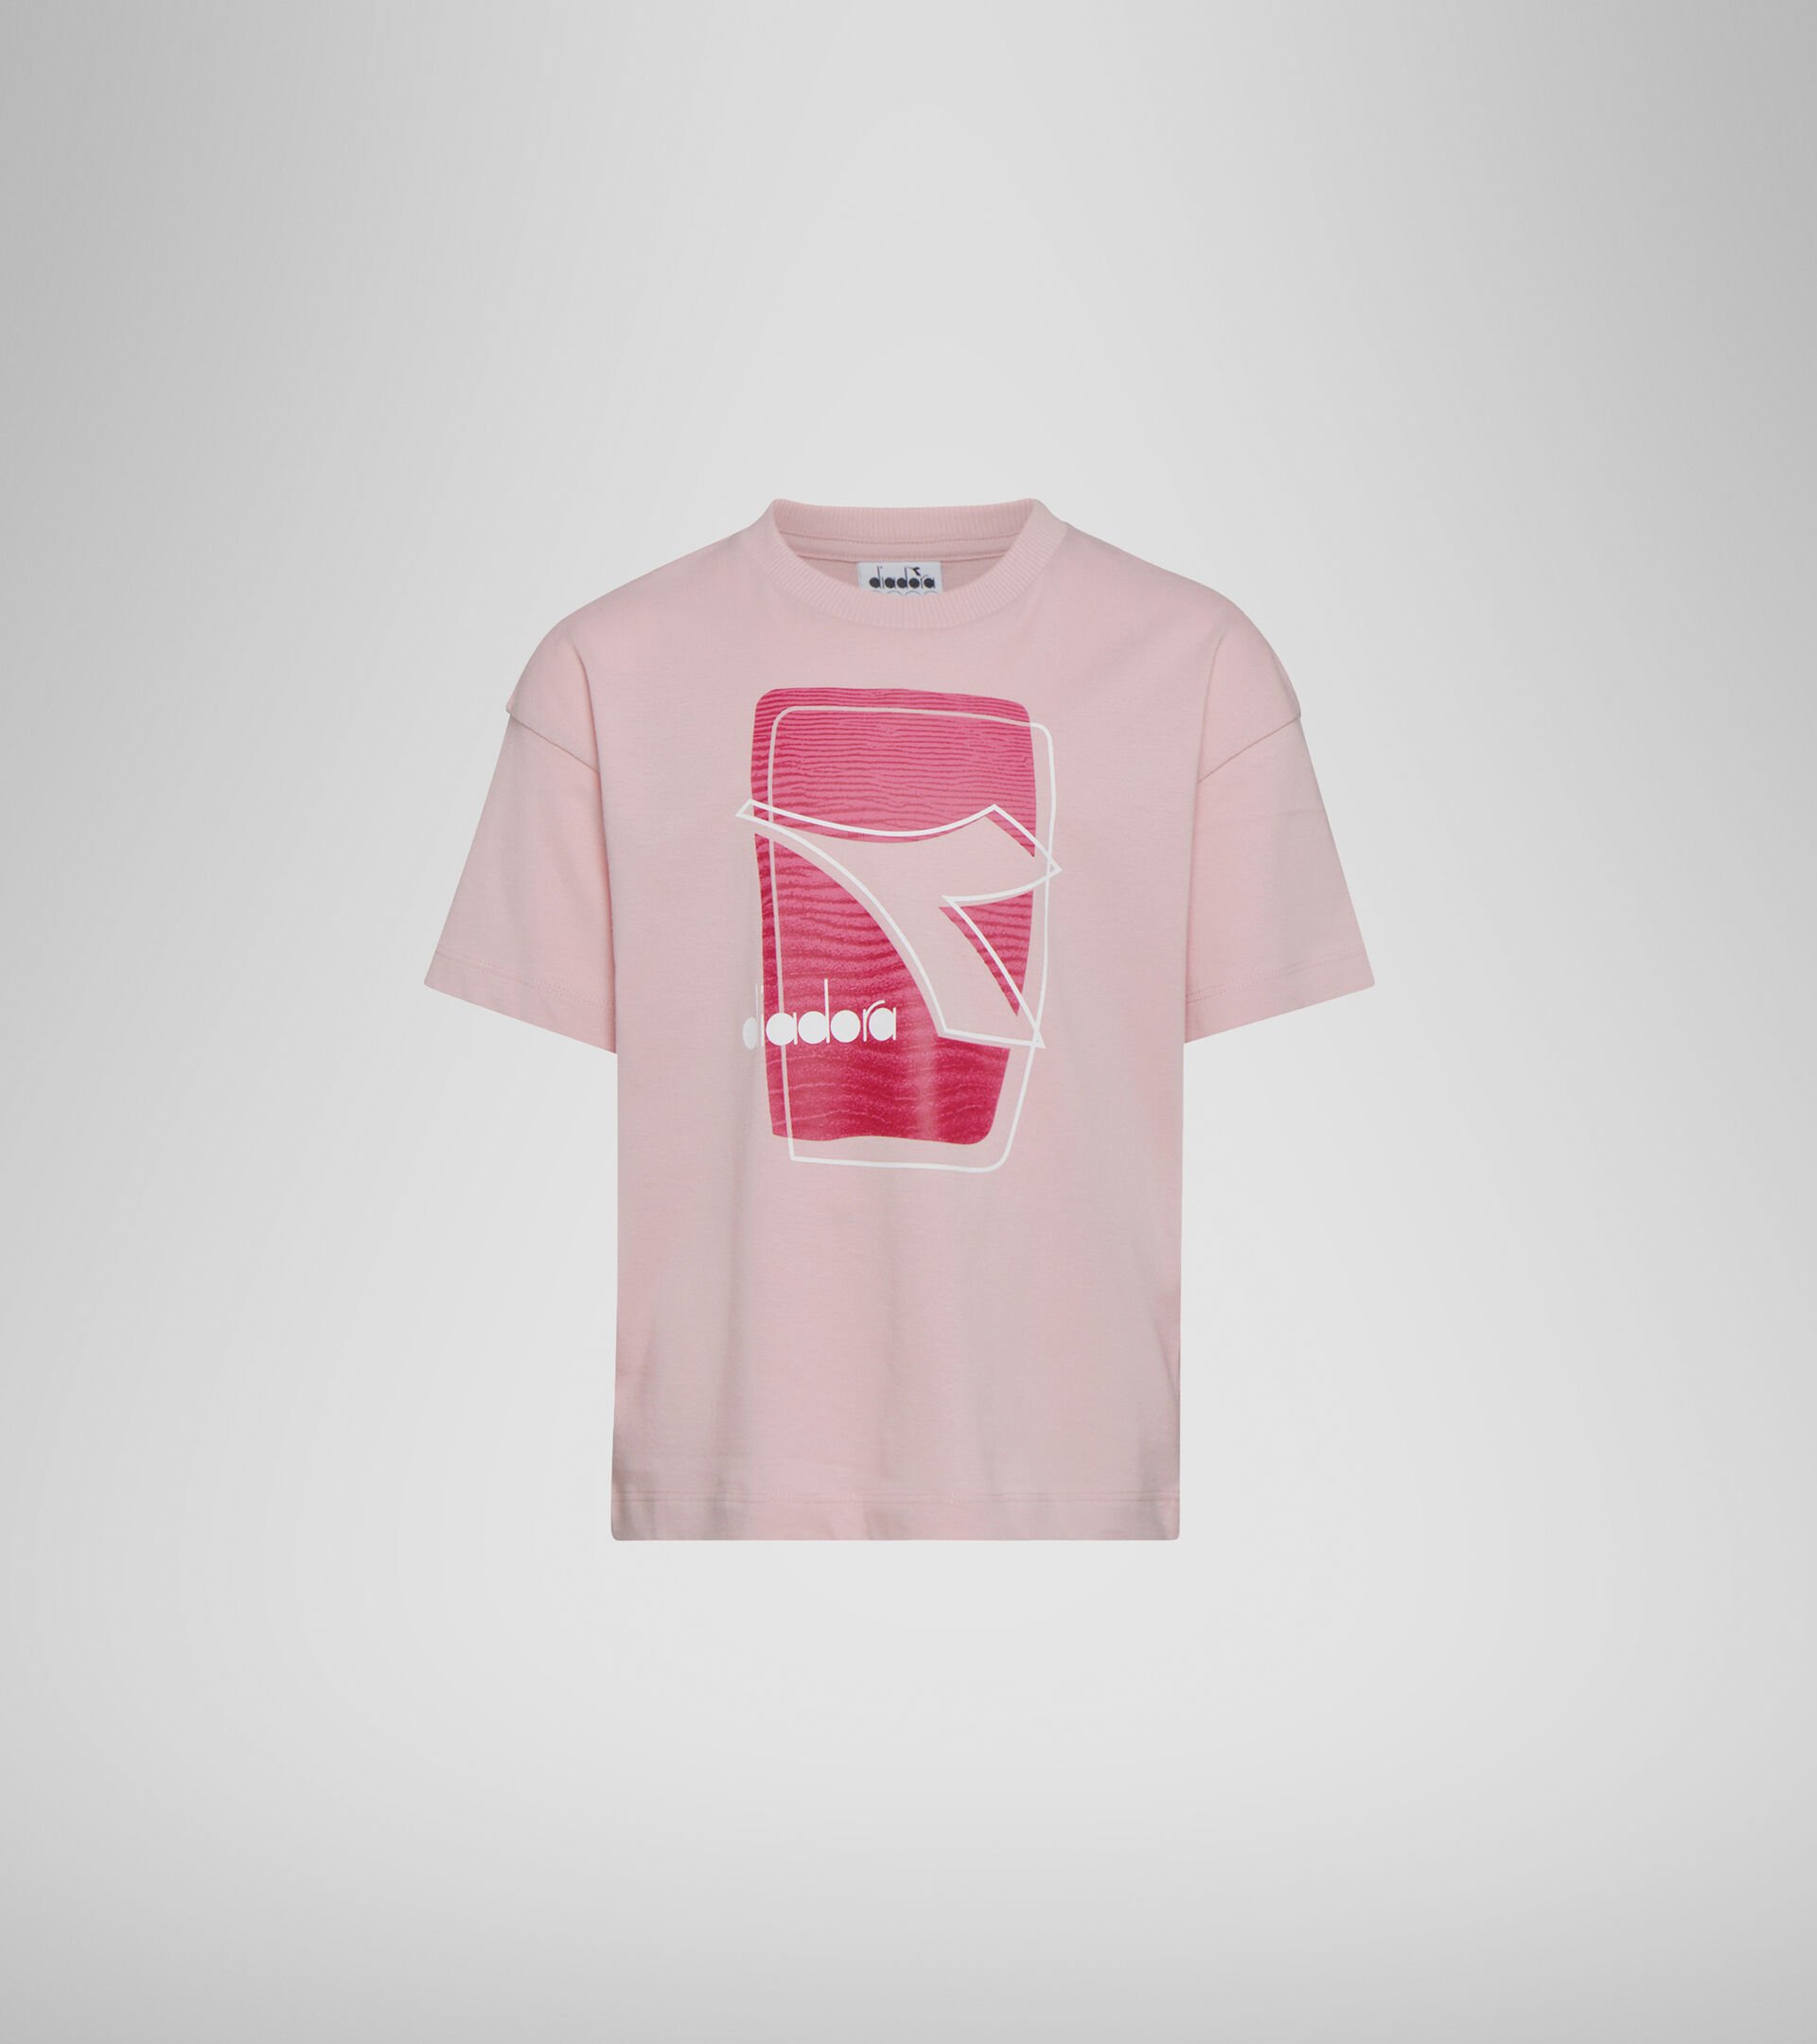 Camiseta con logotipo - Niños y niñas JU. T-SHIRT SS ELEMENTS ROSA PIEL DE MELOCOTON - Diadora